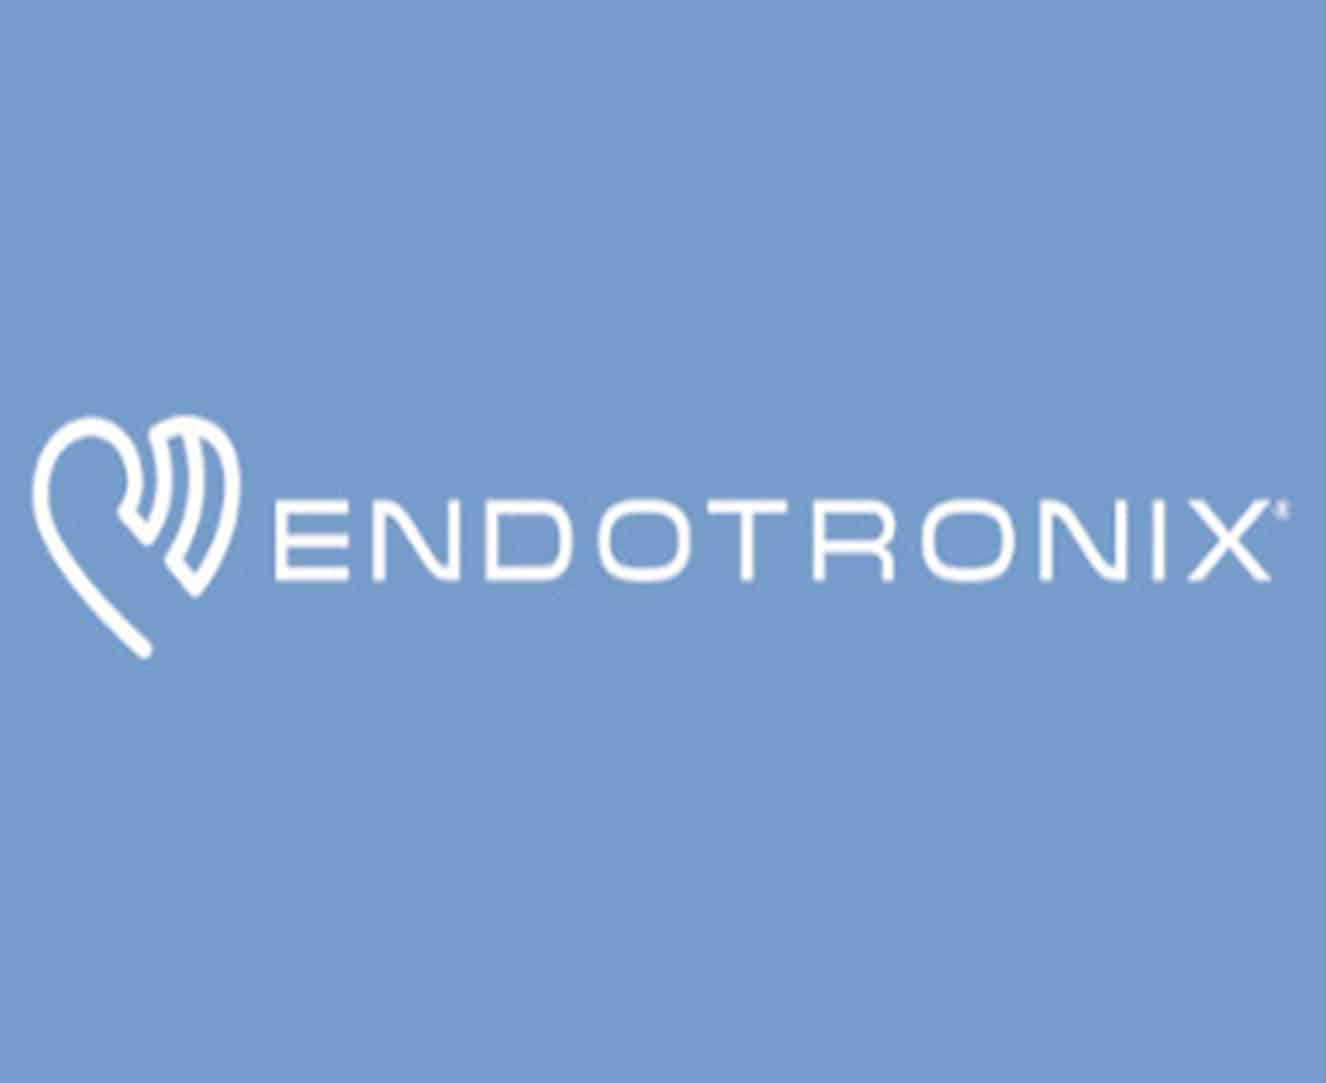 Endotronix Image